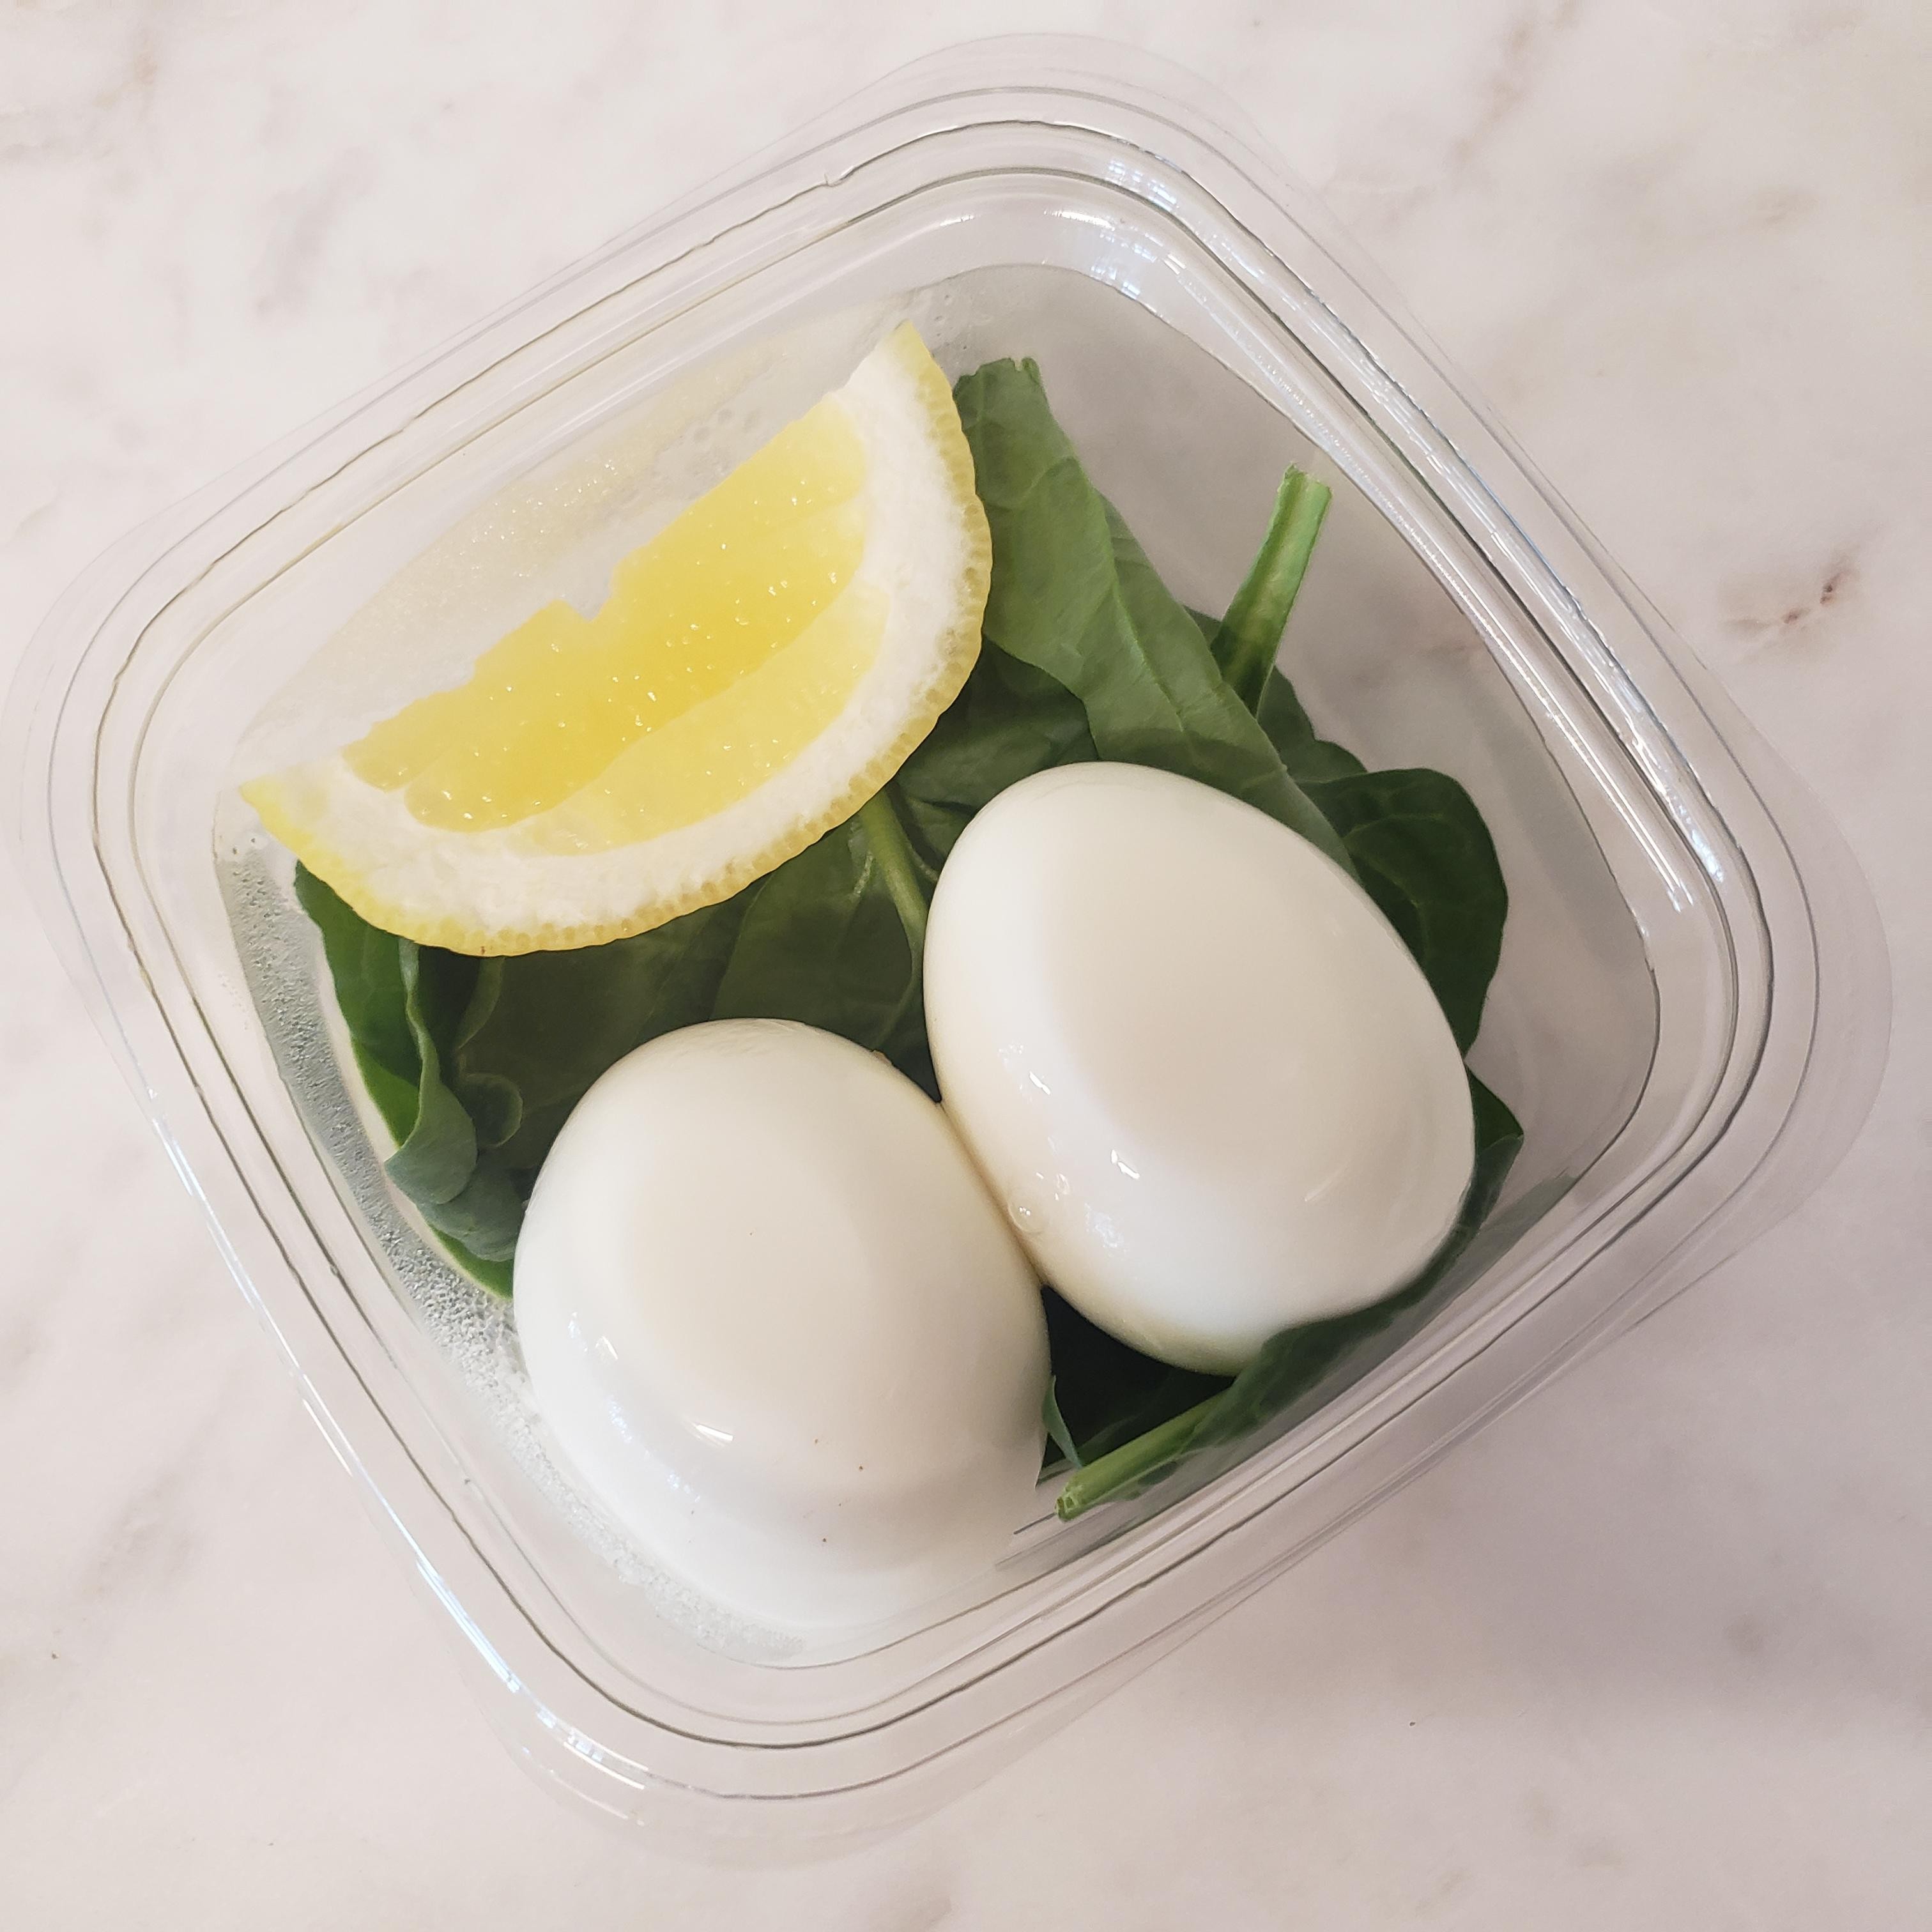 Boiled Eggs + Greens, Lemon